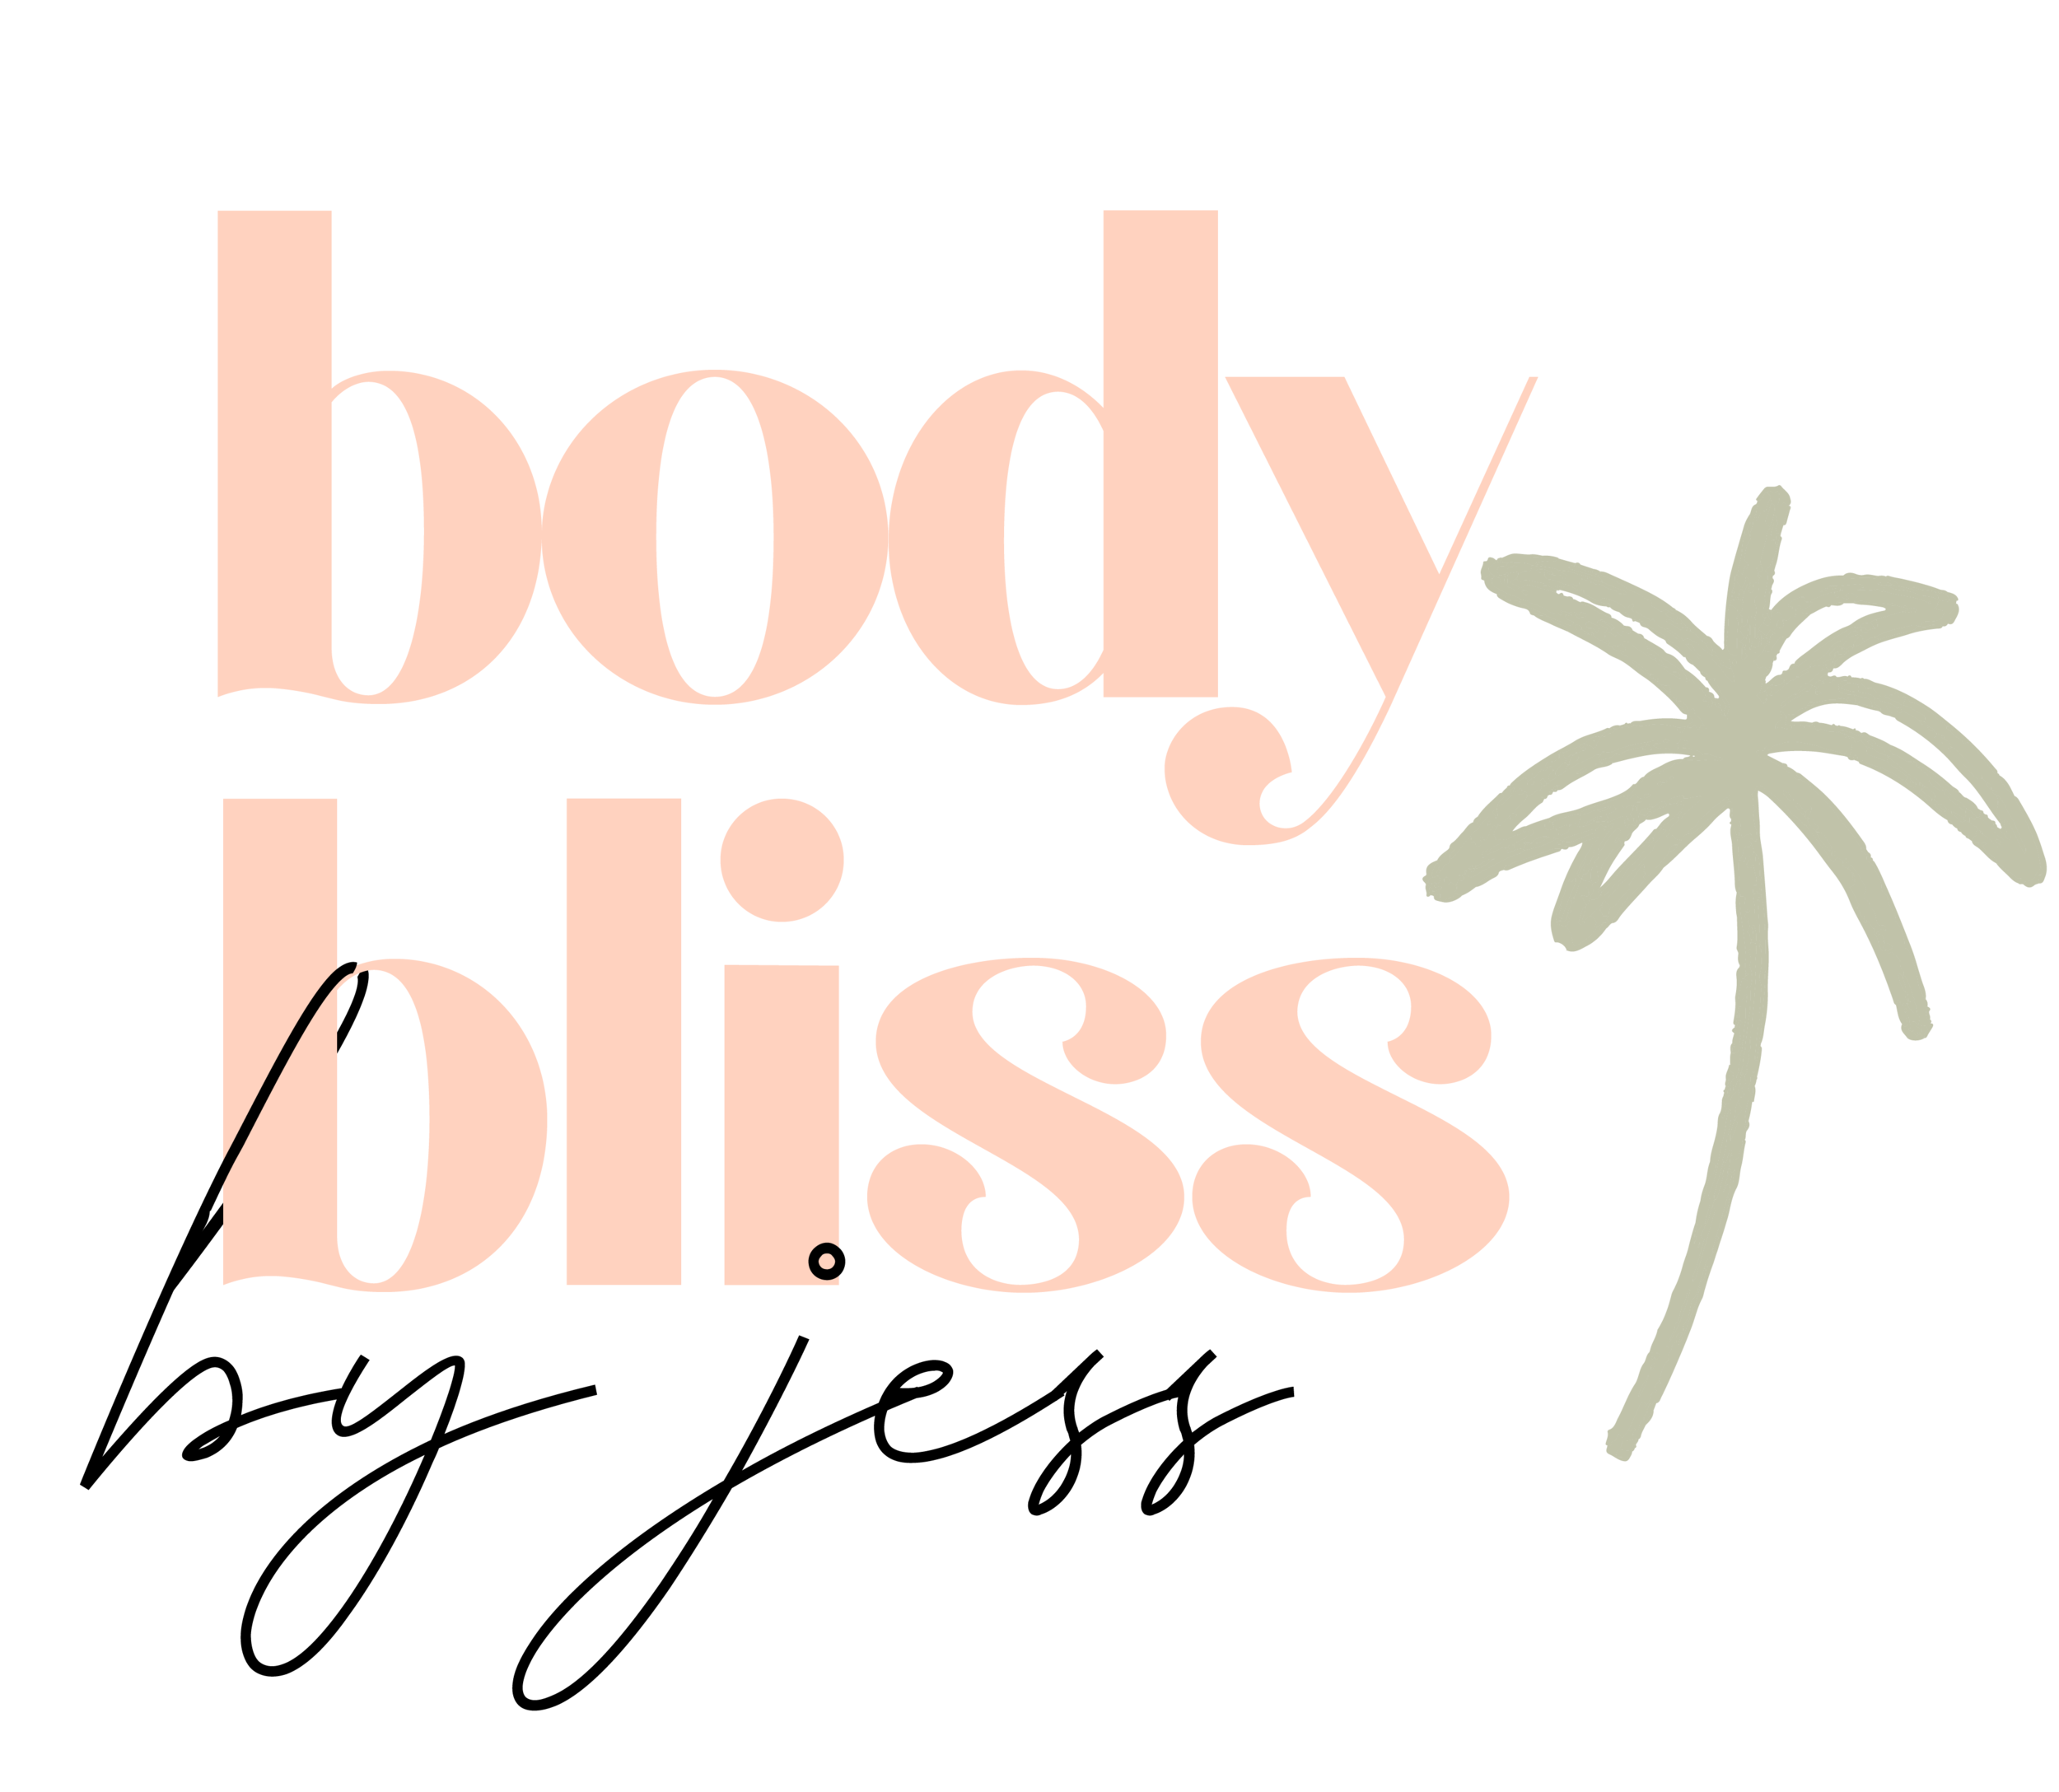 Body Bliss by Jess